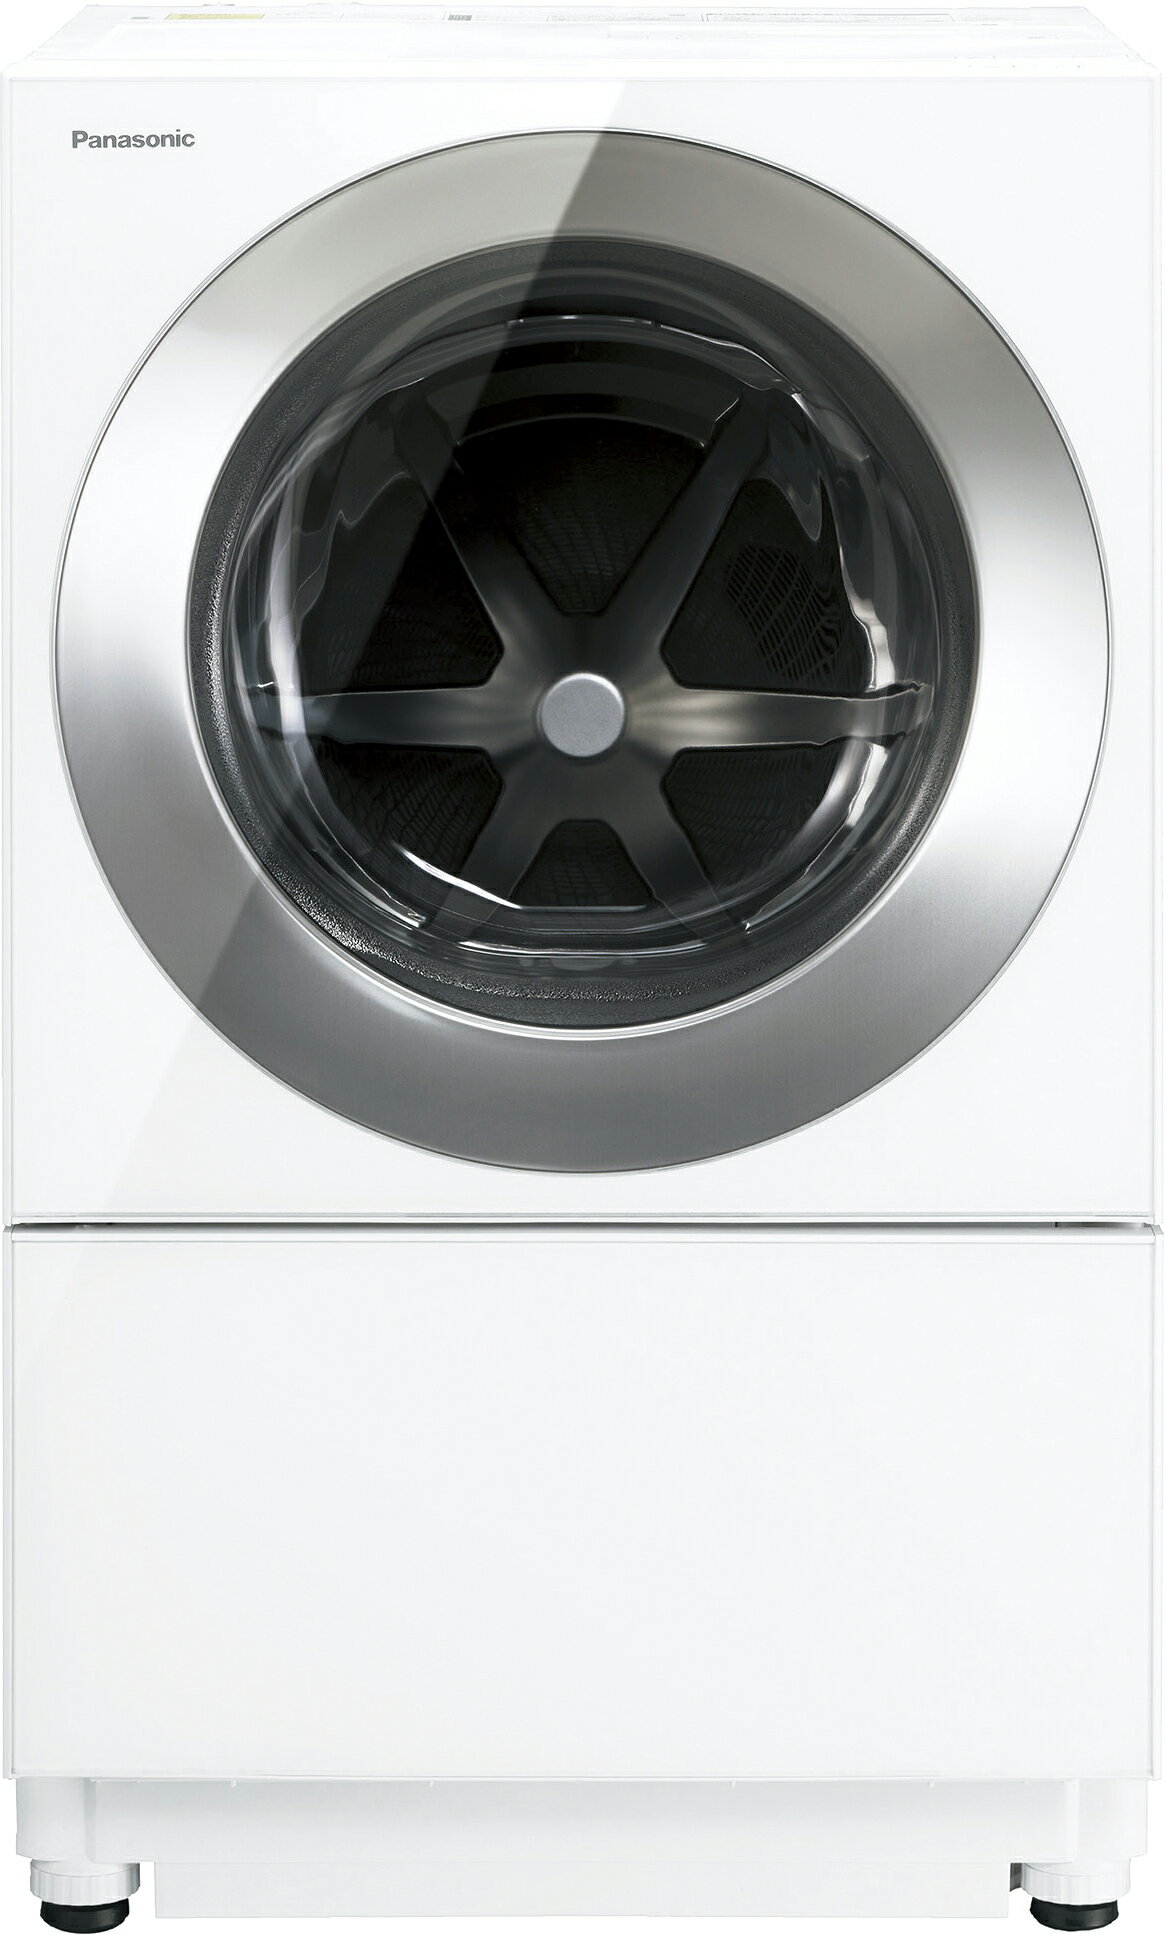 【5年間延長保証込】Panasonic パナソニック 【Aエリア配送】NA-VG2800L-S ななめドラム洗濯乾燥機 左開き 洗濯・脱水容量10kg/乾燥5kg ライフスタイルをデザインする洗濯機。衣類も空間も、もっと美しく。 液体洗剤・柔軟剤 自動投入